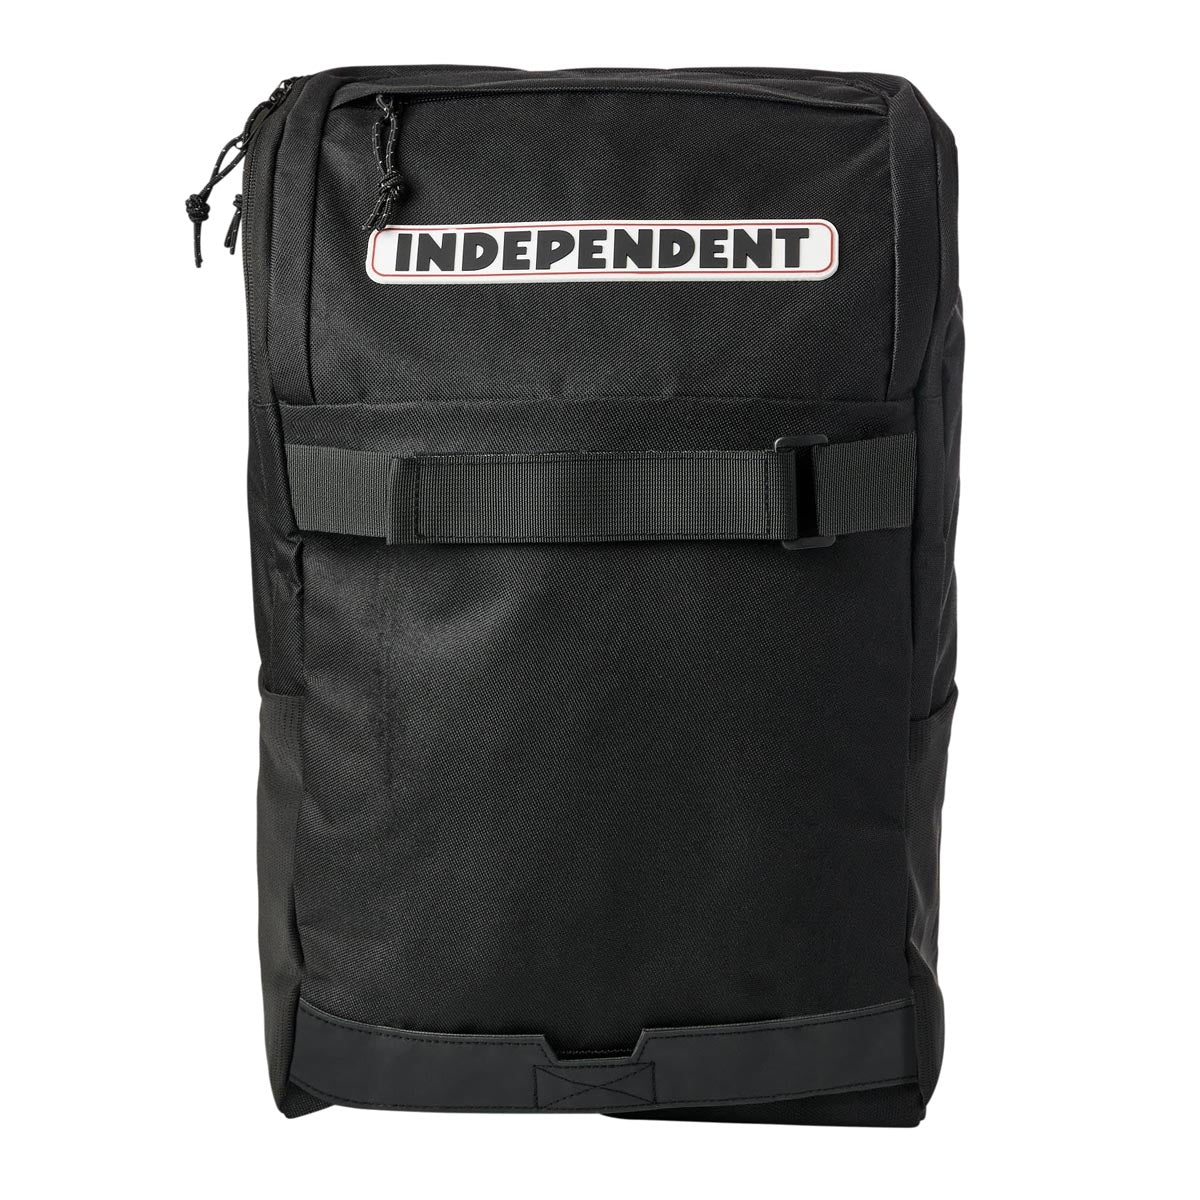 Independent Bar Logo Backpack - Black image 1